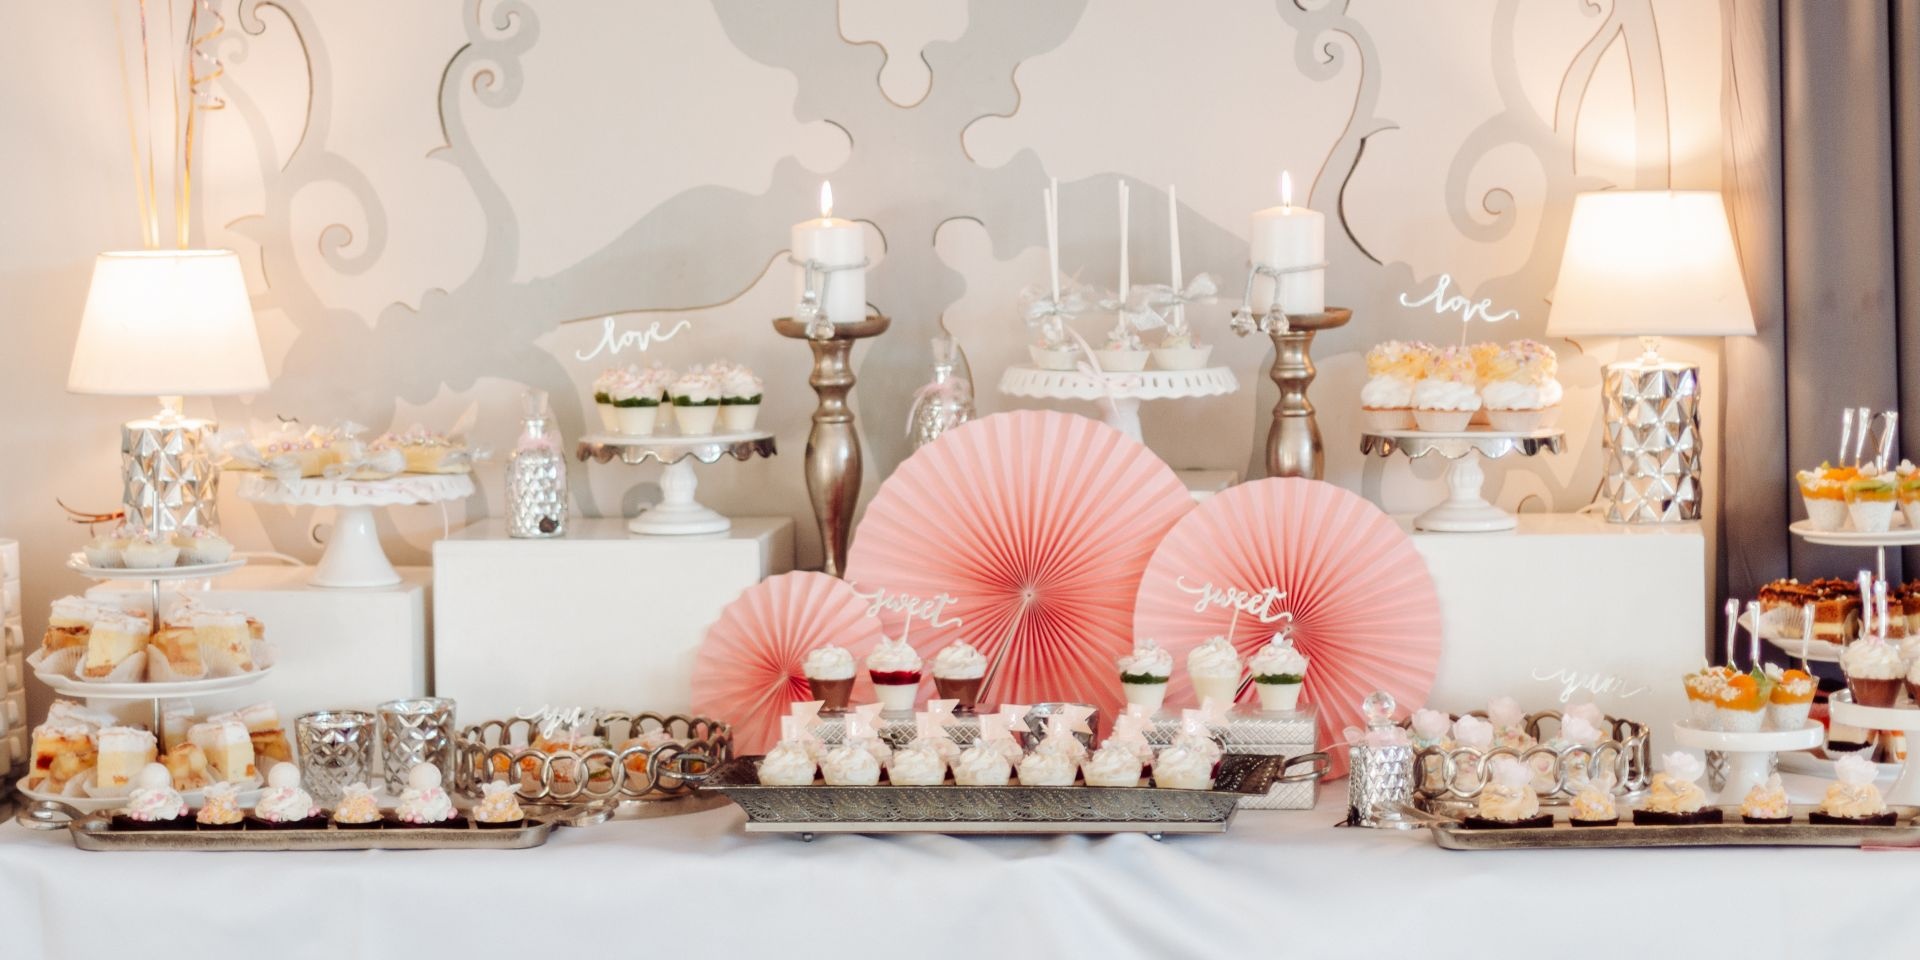 Słodkie stoły
Ozdoba każdej imprezy   zawsze w przemyślanych kolorach